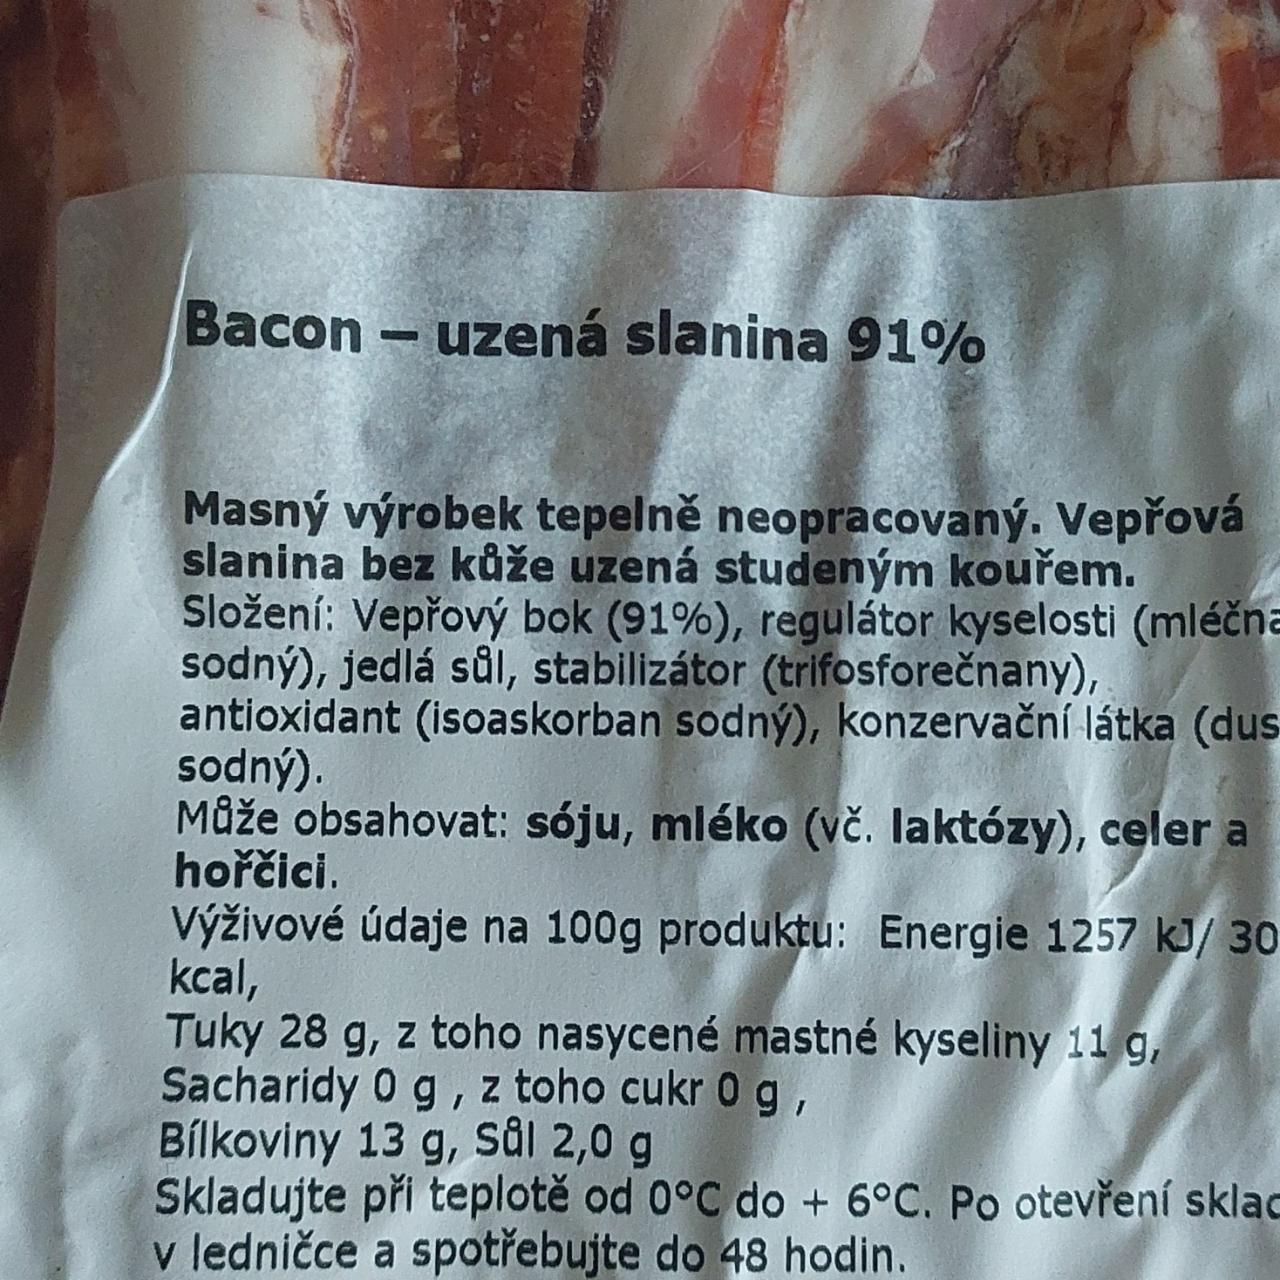 Fotografie - Bacon - uzená slanina 91%